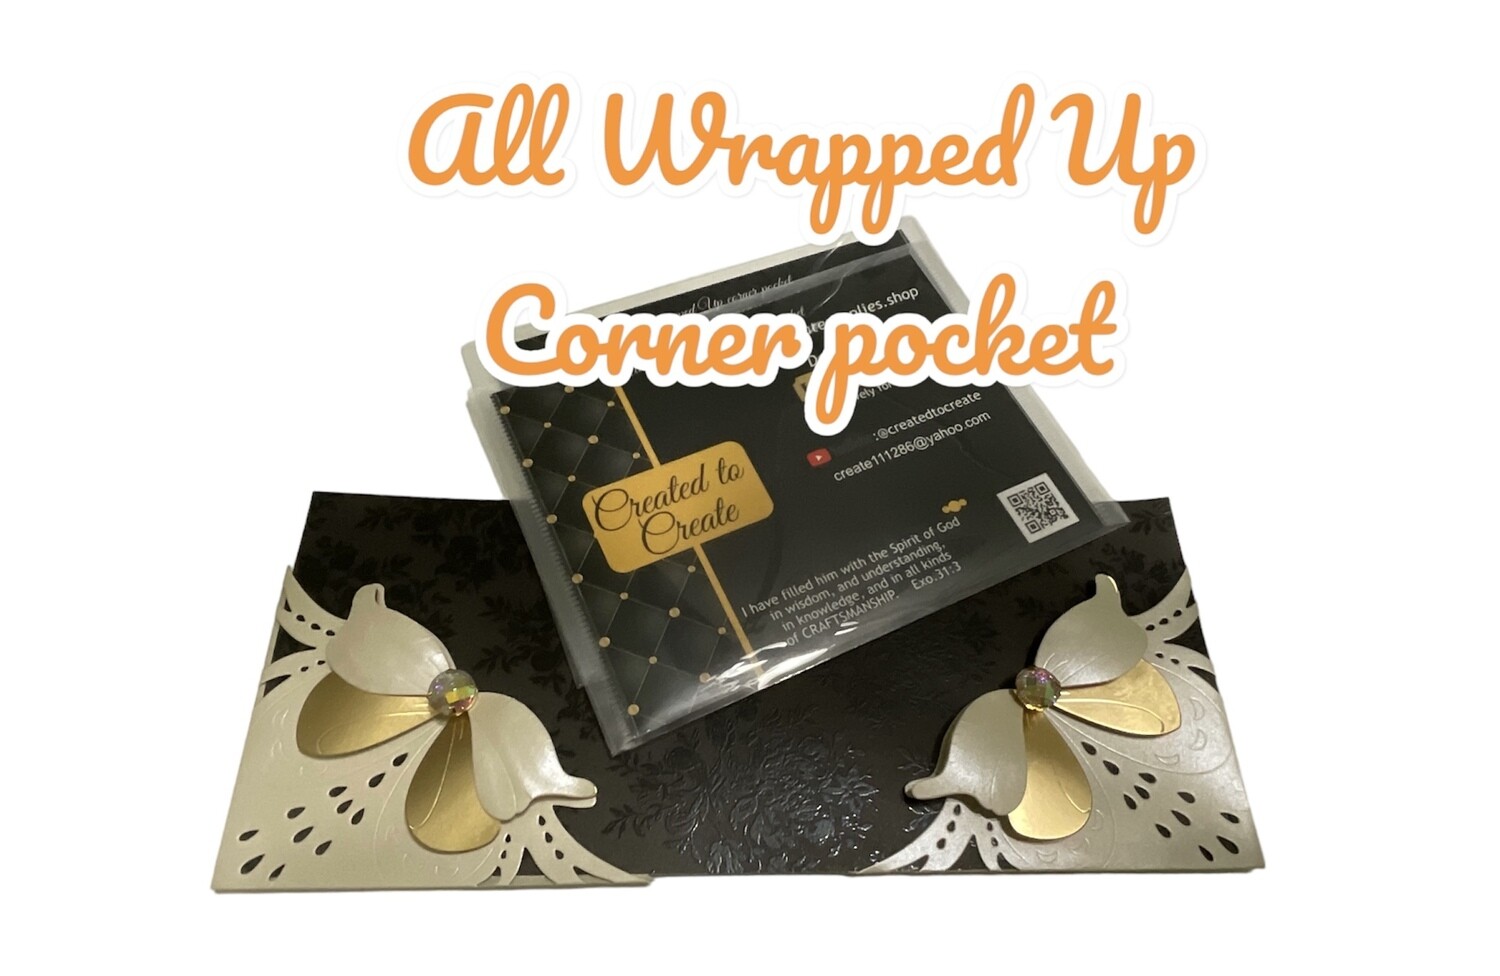 All Wrapped Up Corner Pocket (LEFT)